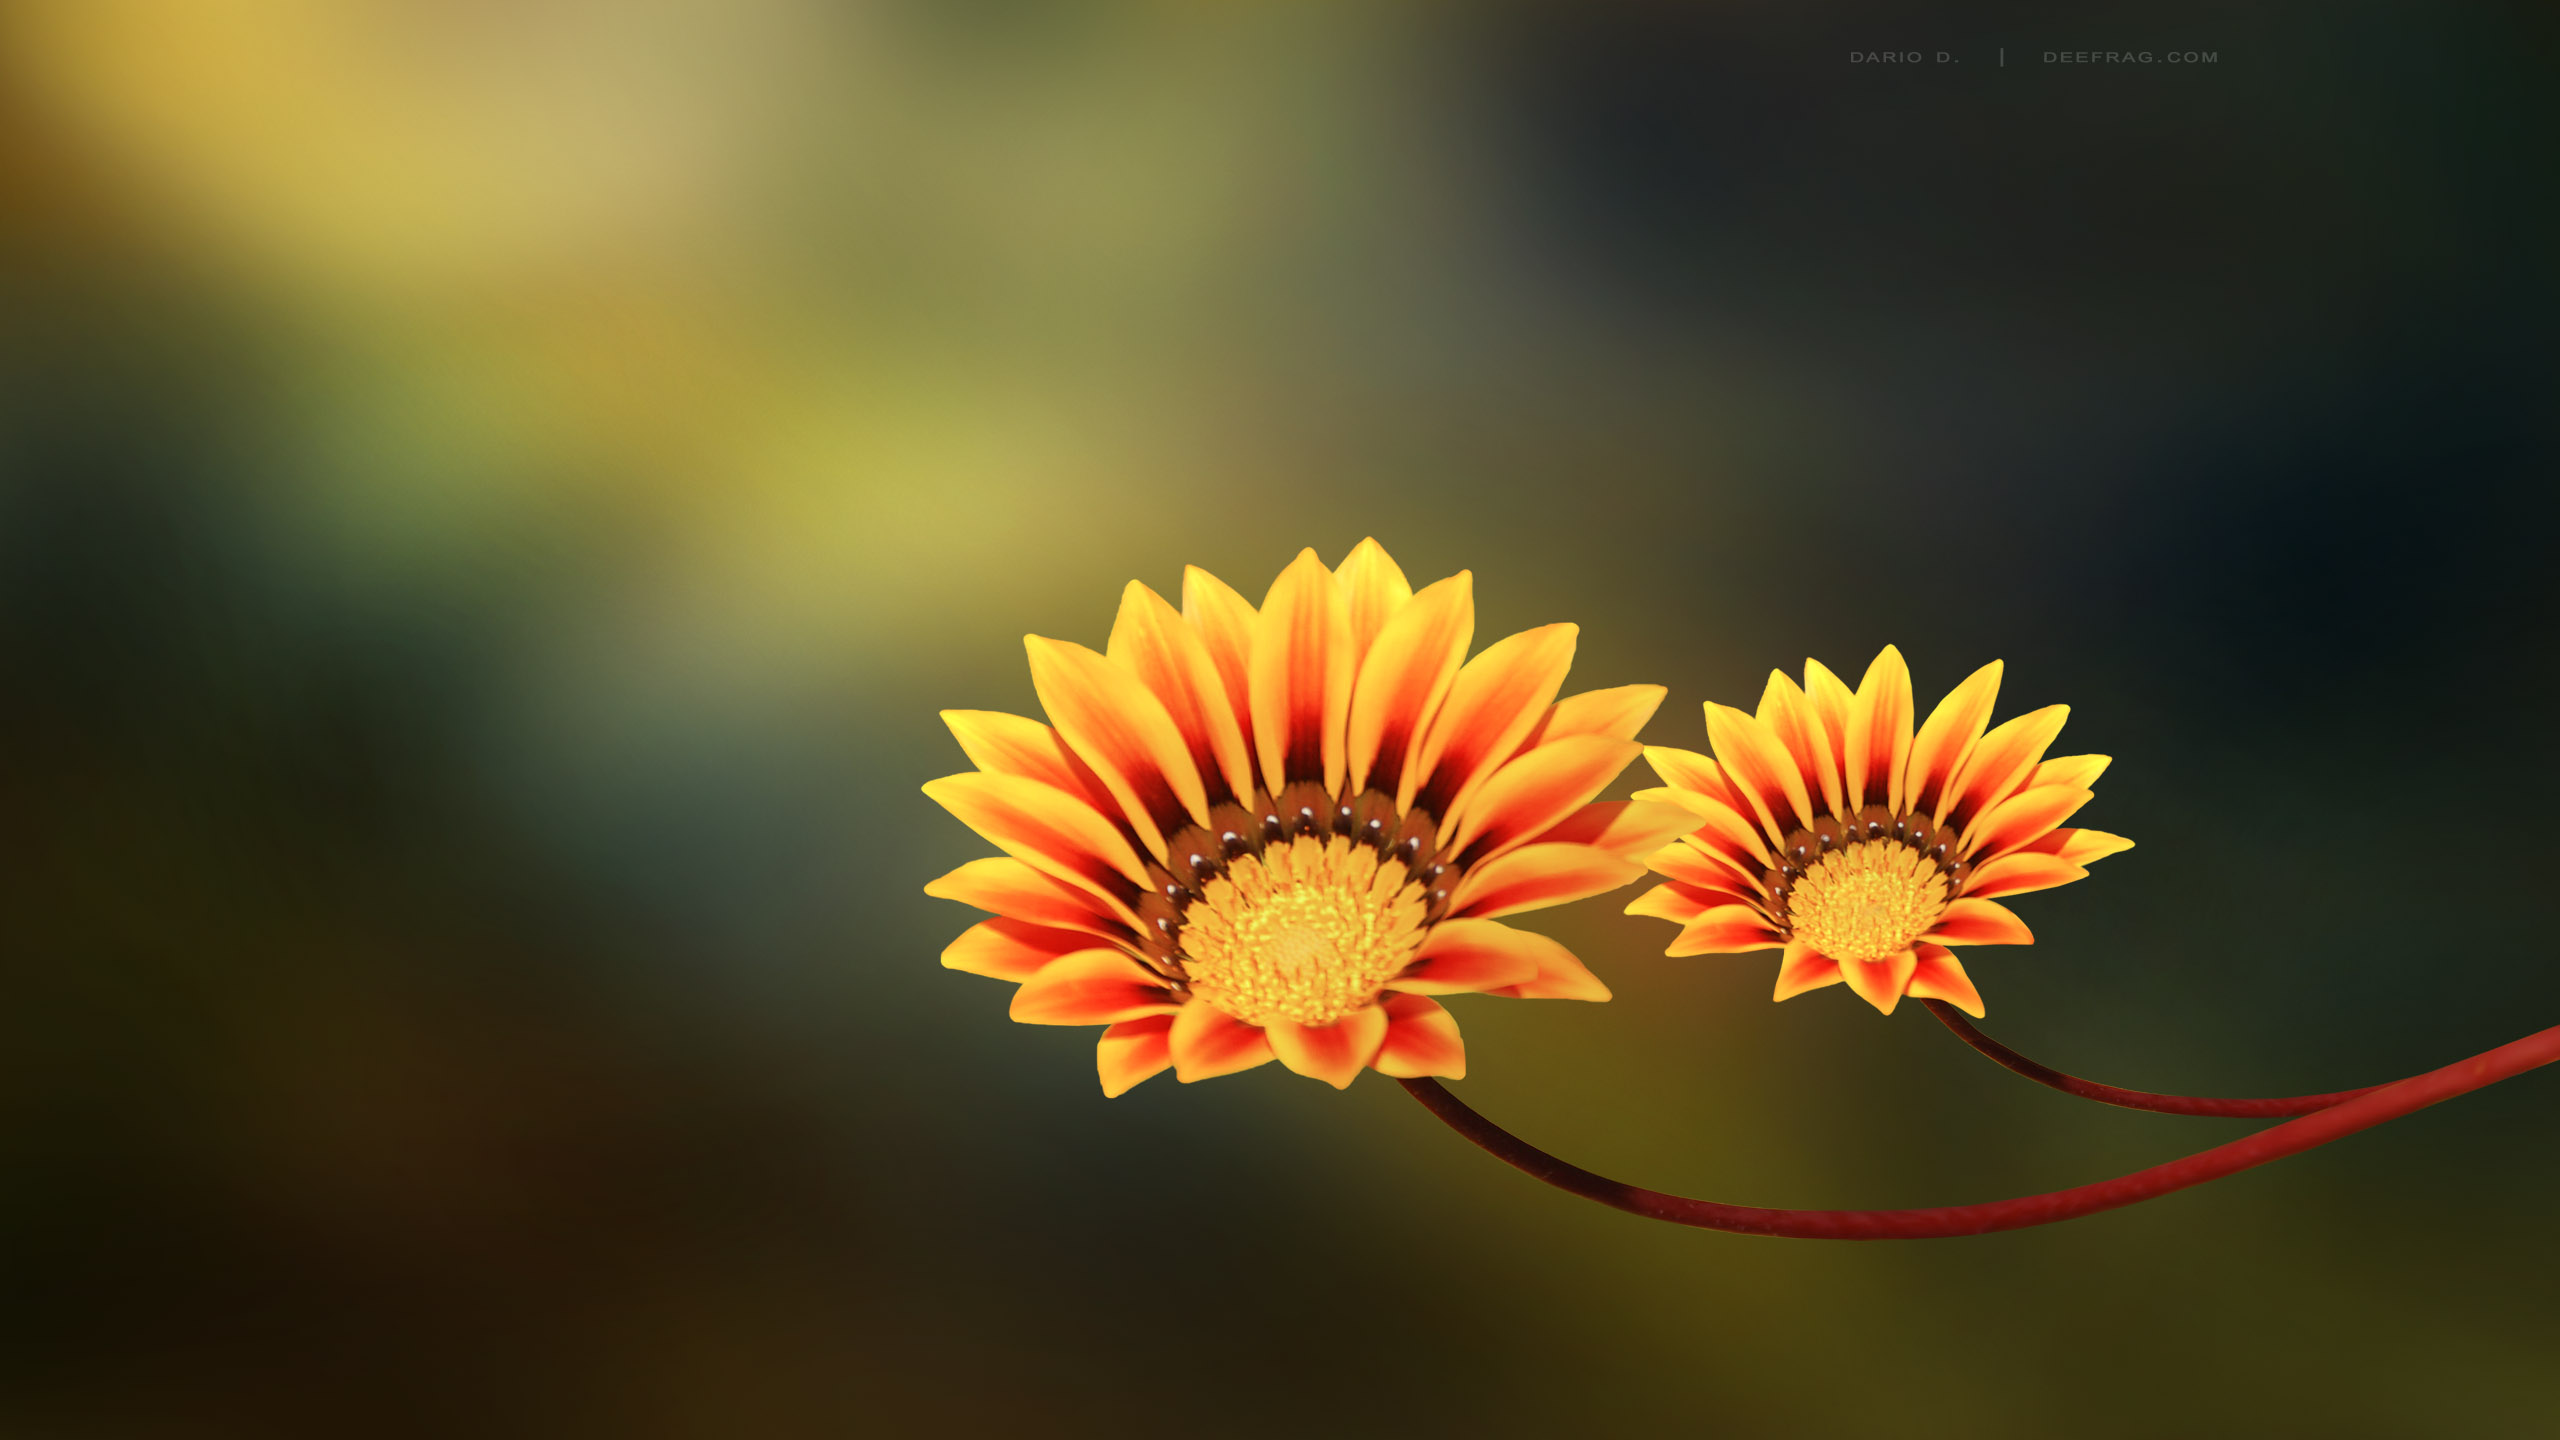 Two-Flowers-yellow-orange-flowers-nature.jpg